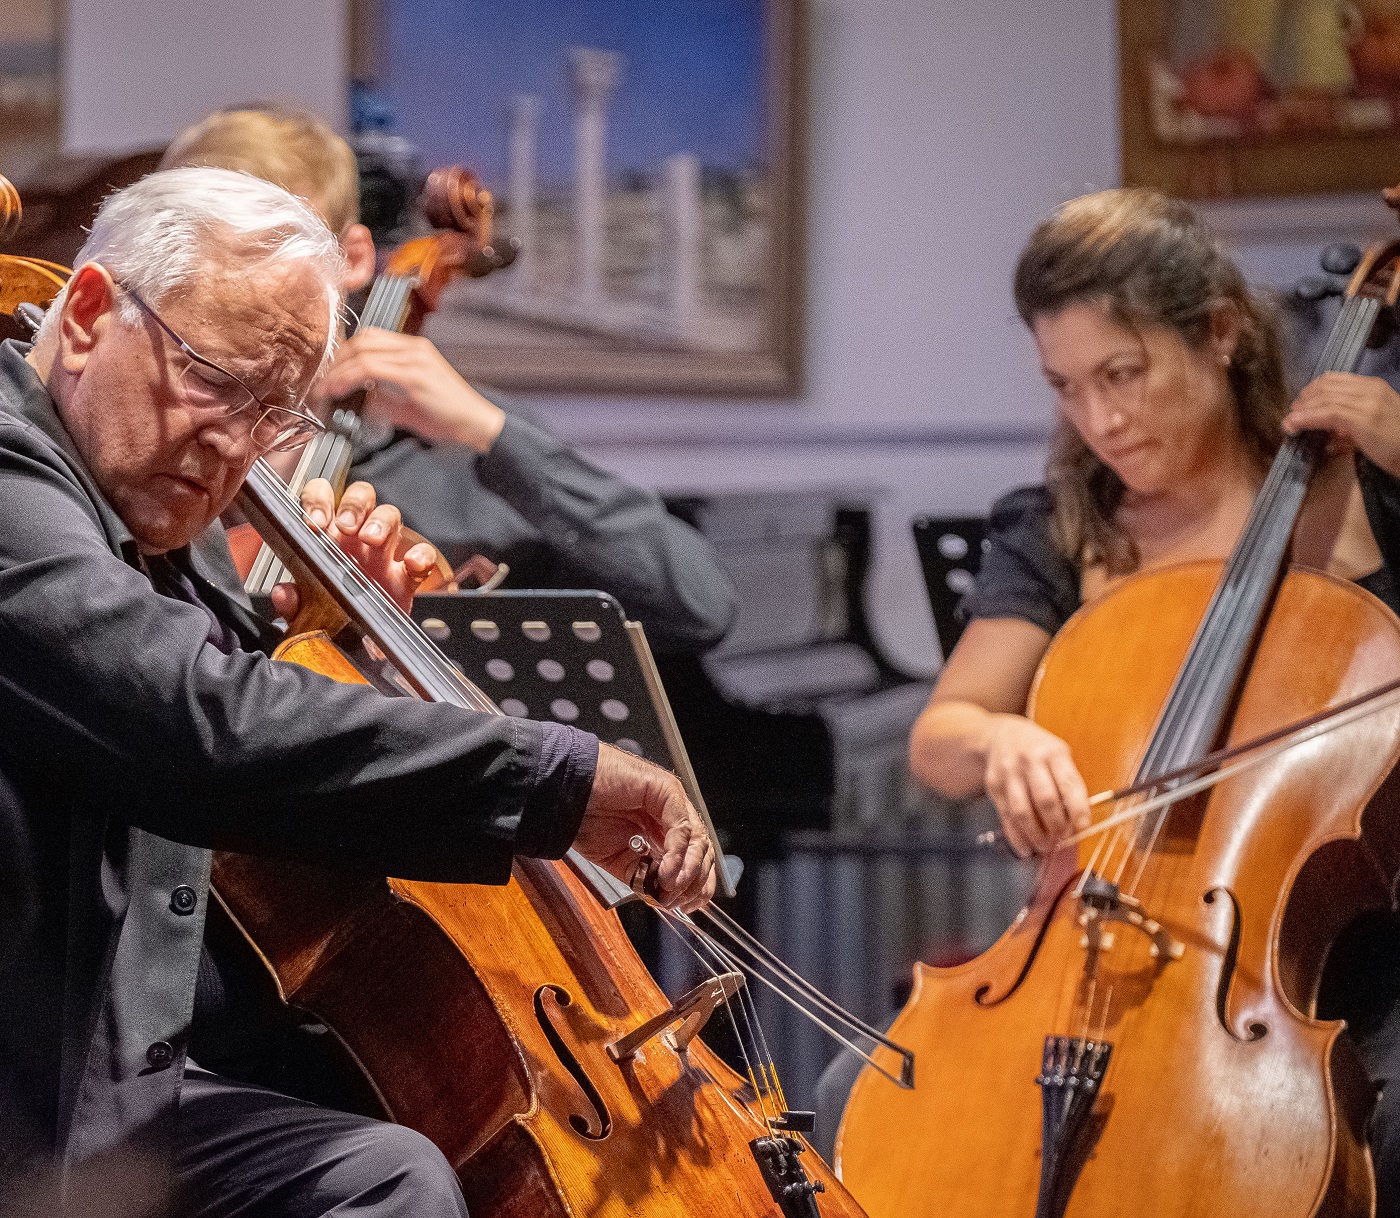 Abschlusskonzert Cello-Meisterkurs Prof. David Geringas anspruchsvolle Werke der Celloliteratur